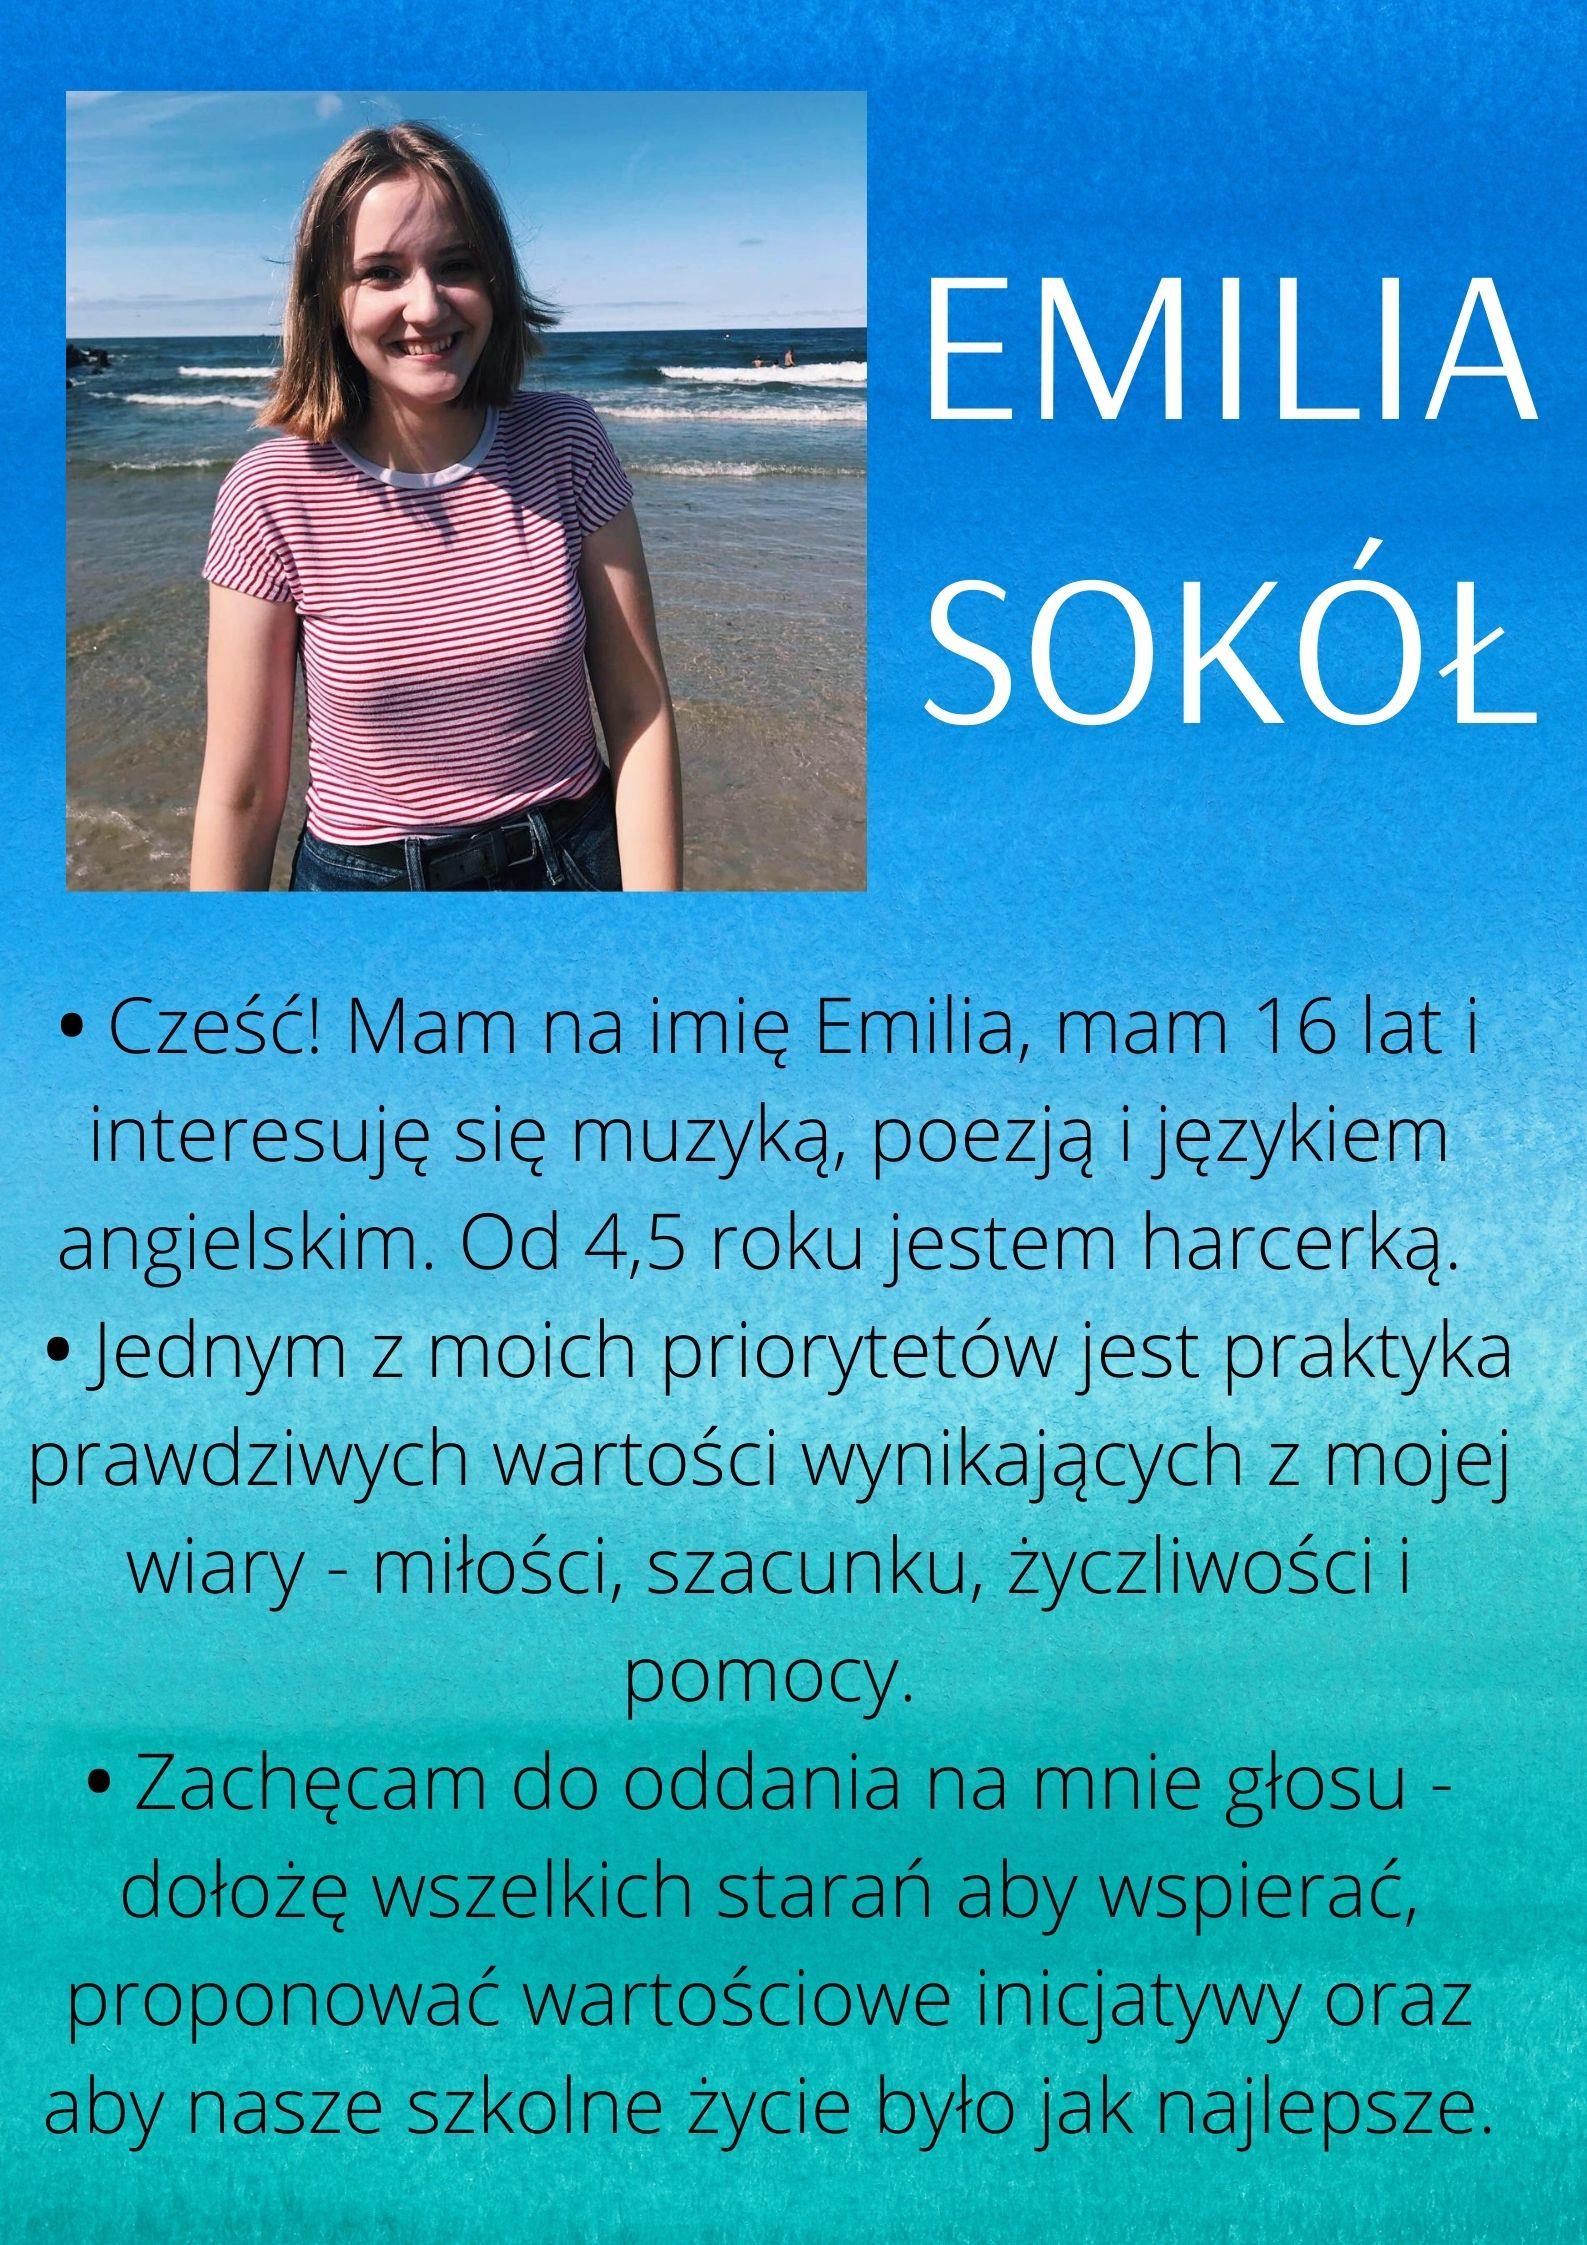 emilia sokol